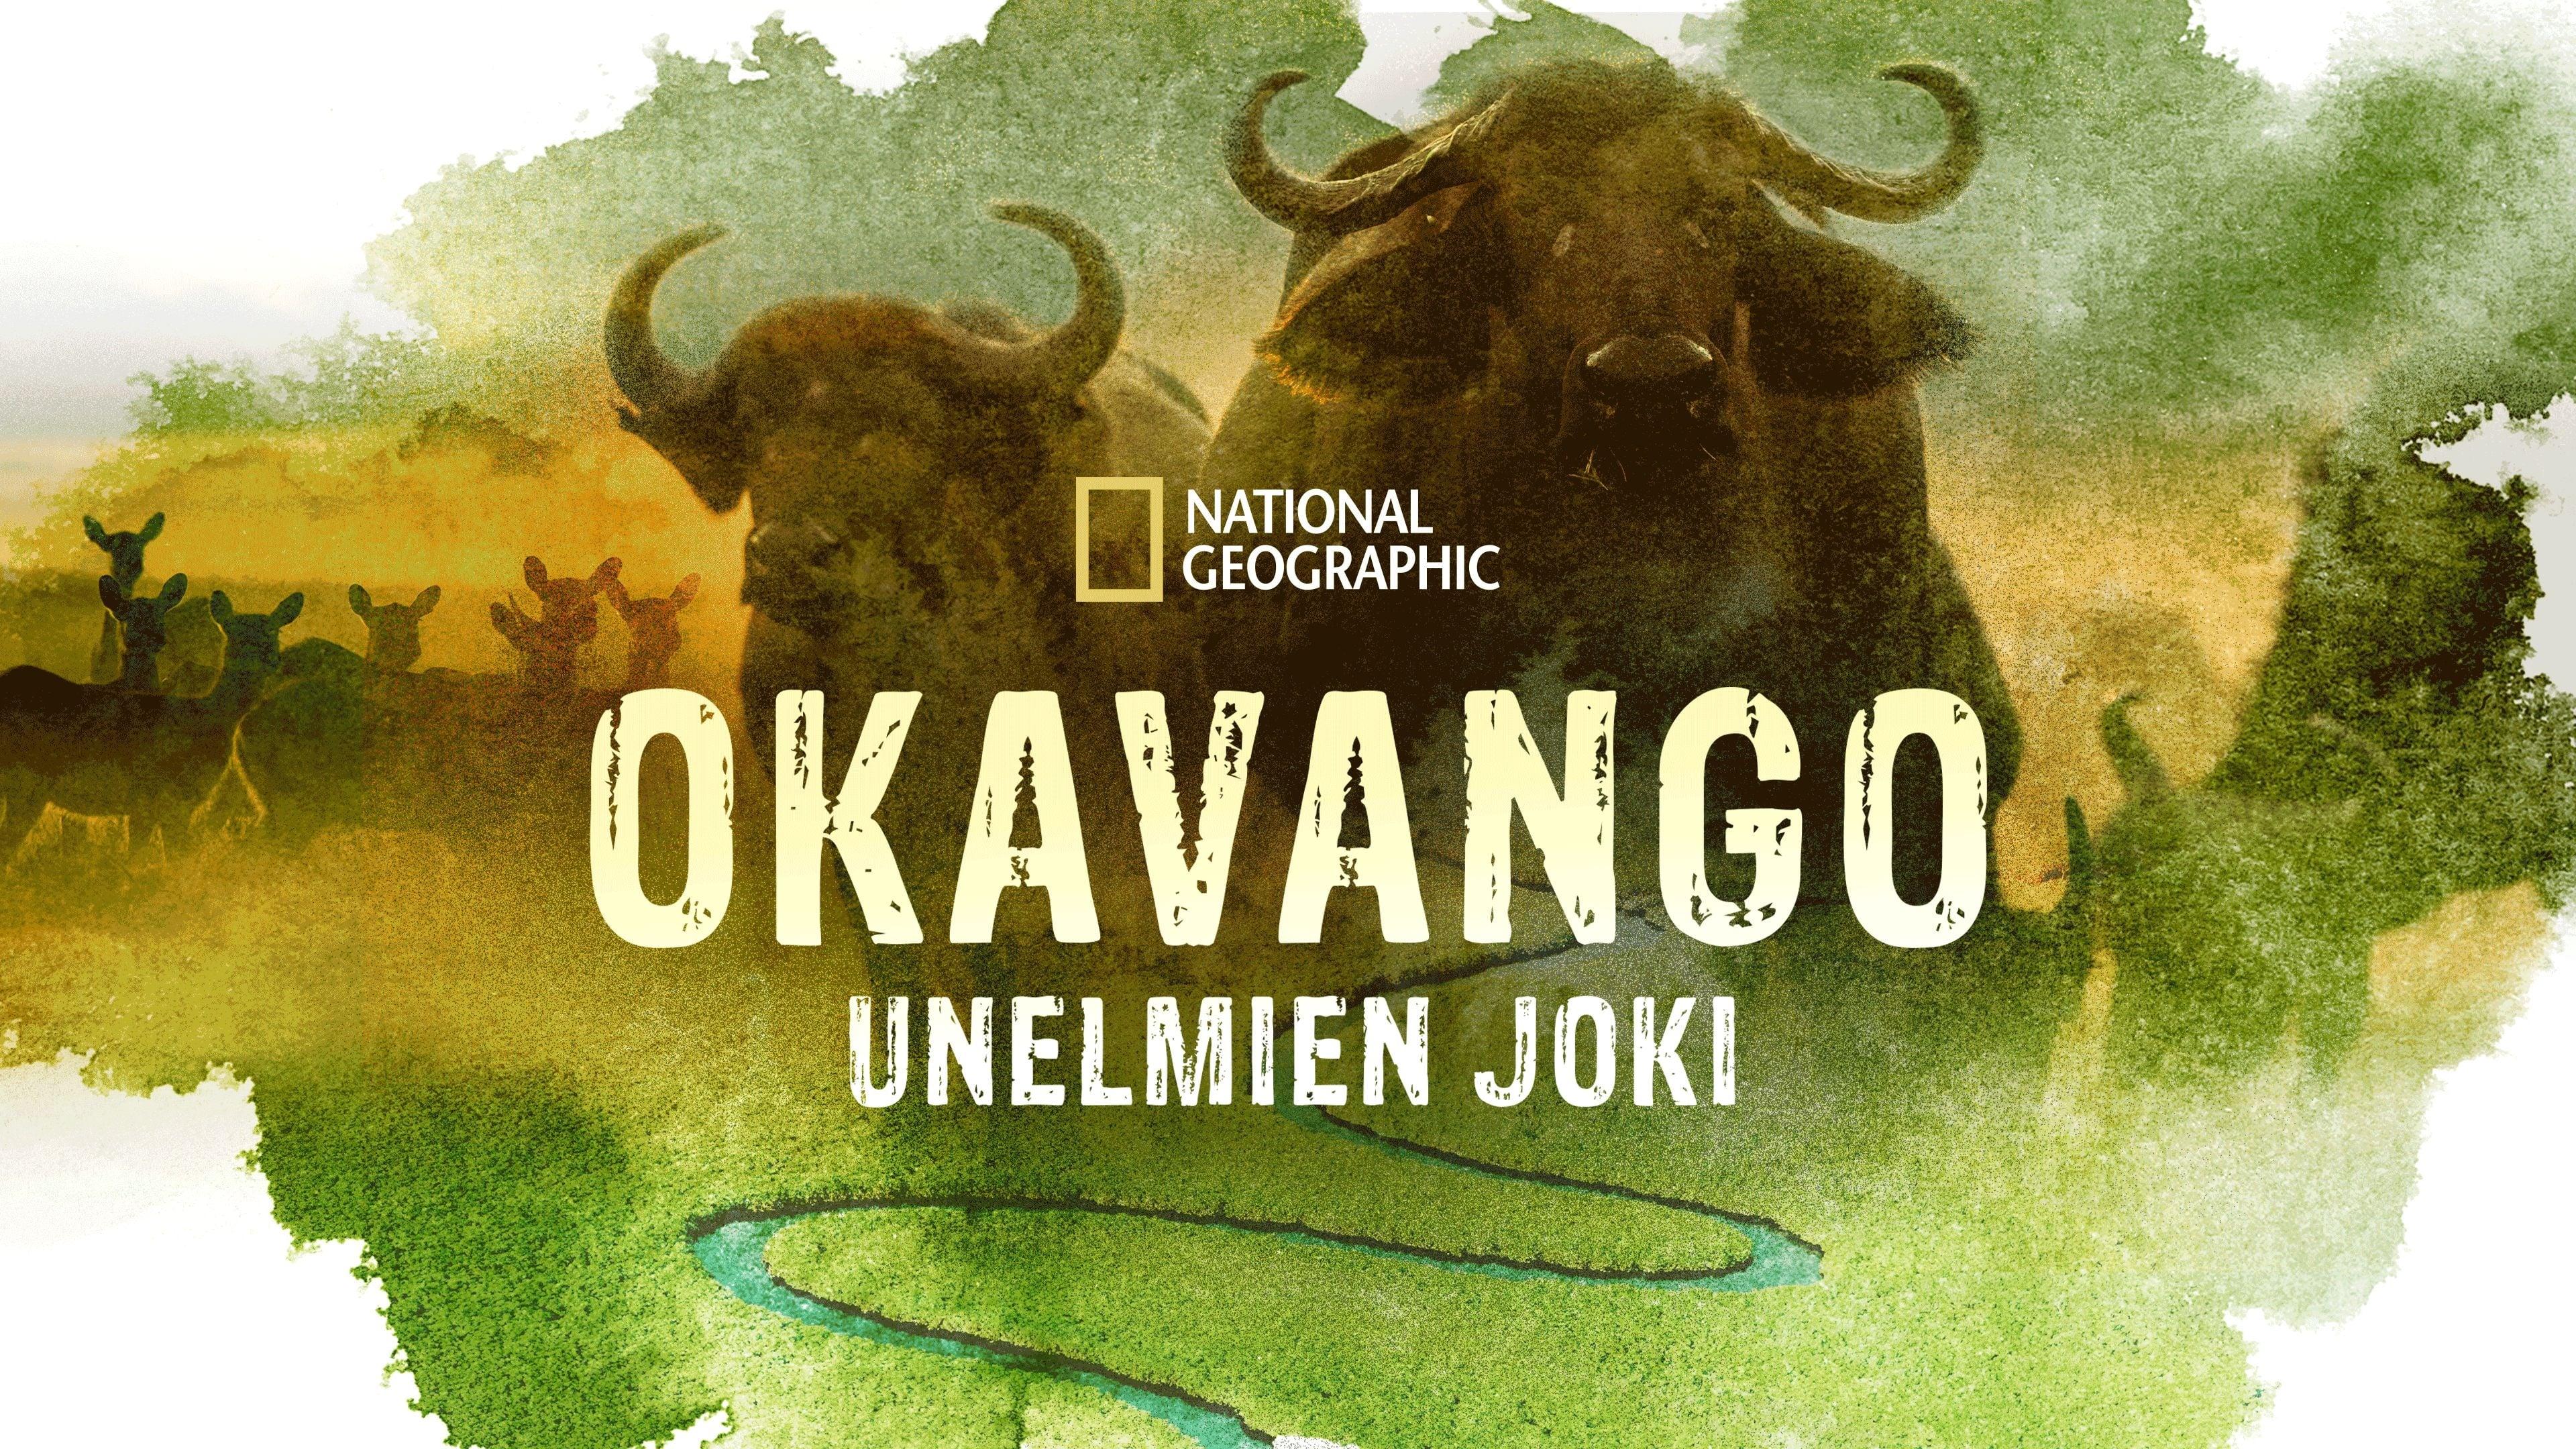 Okavango: River of Dreams backdrop